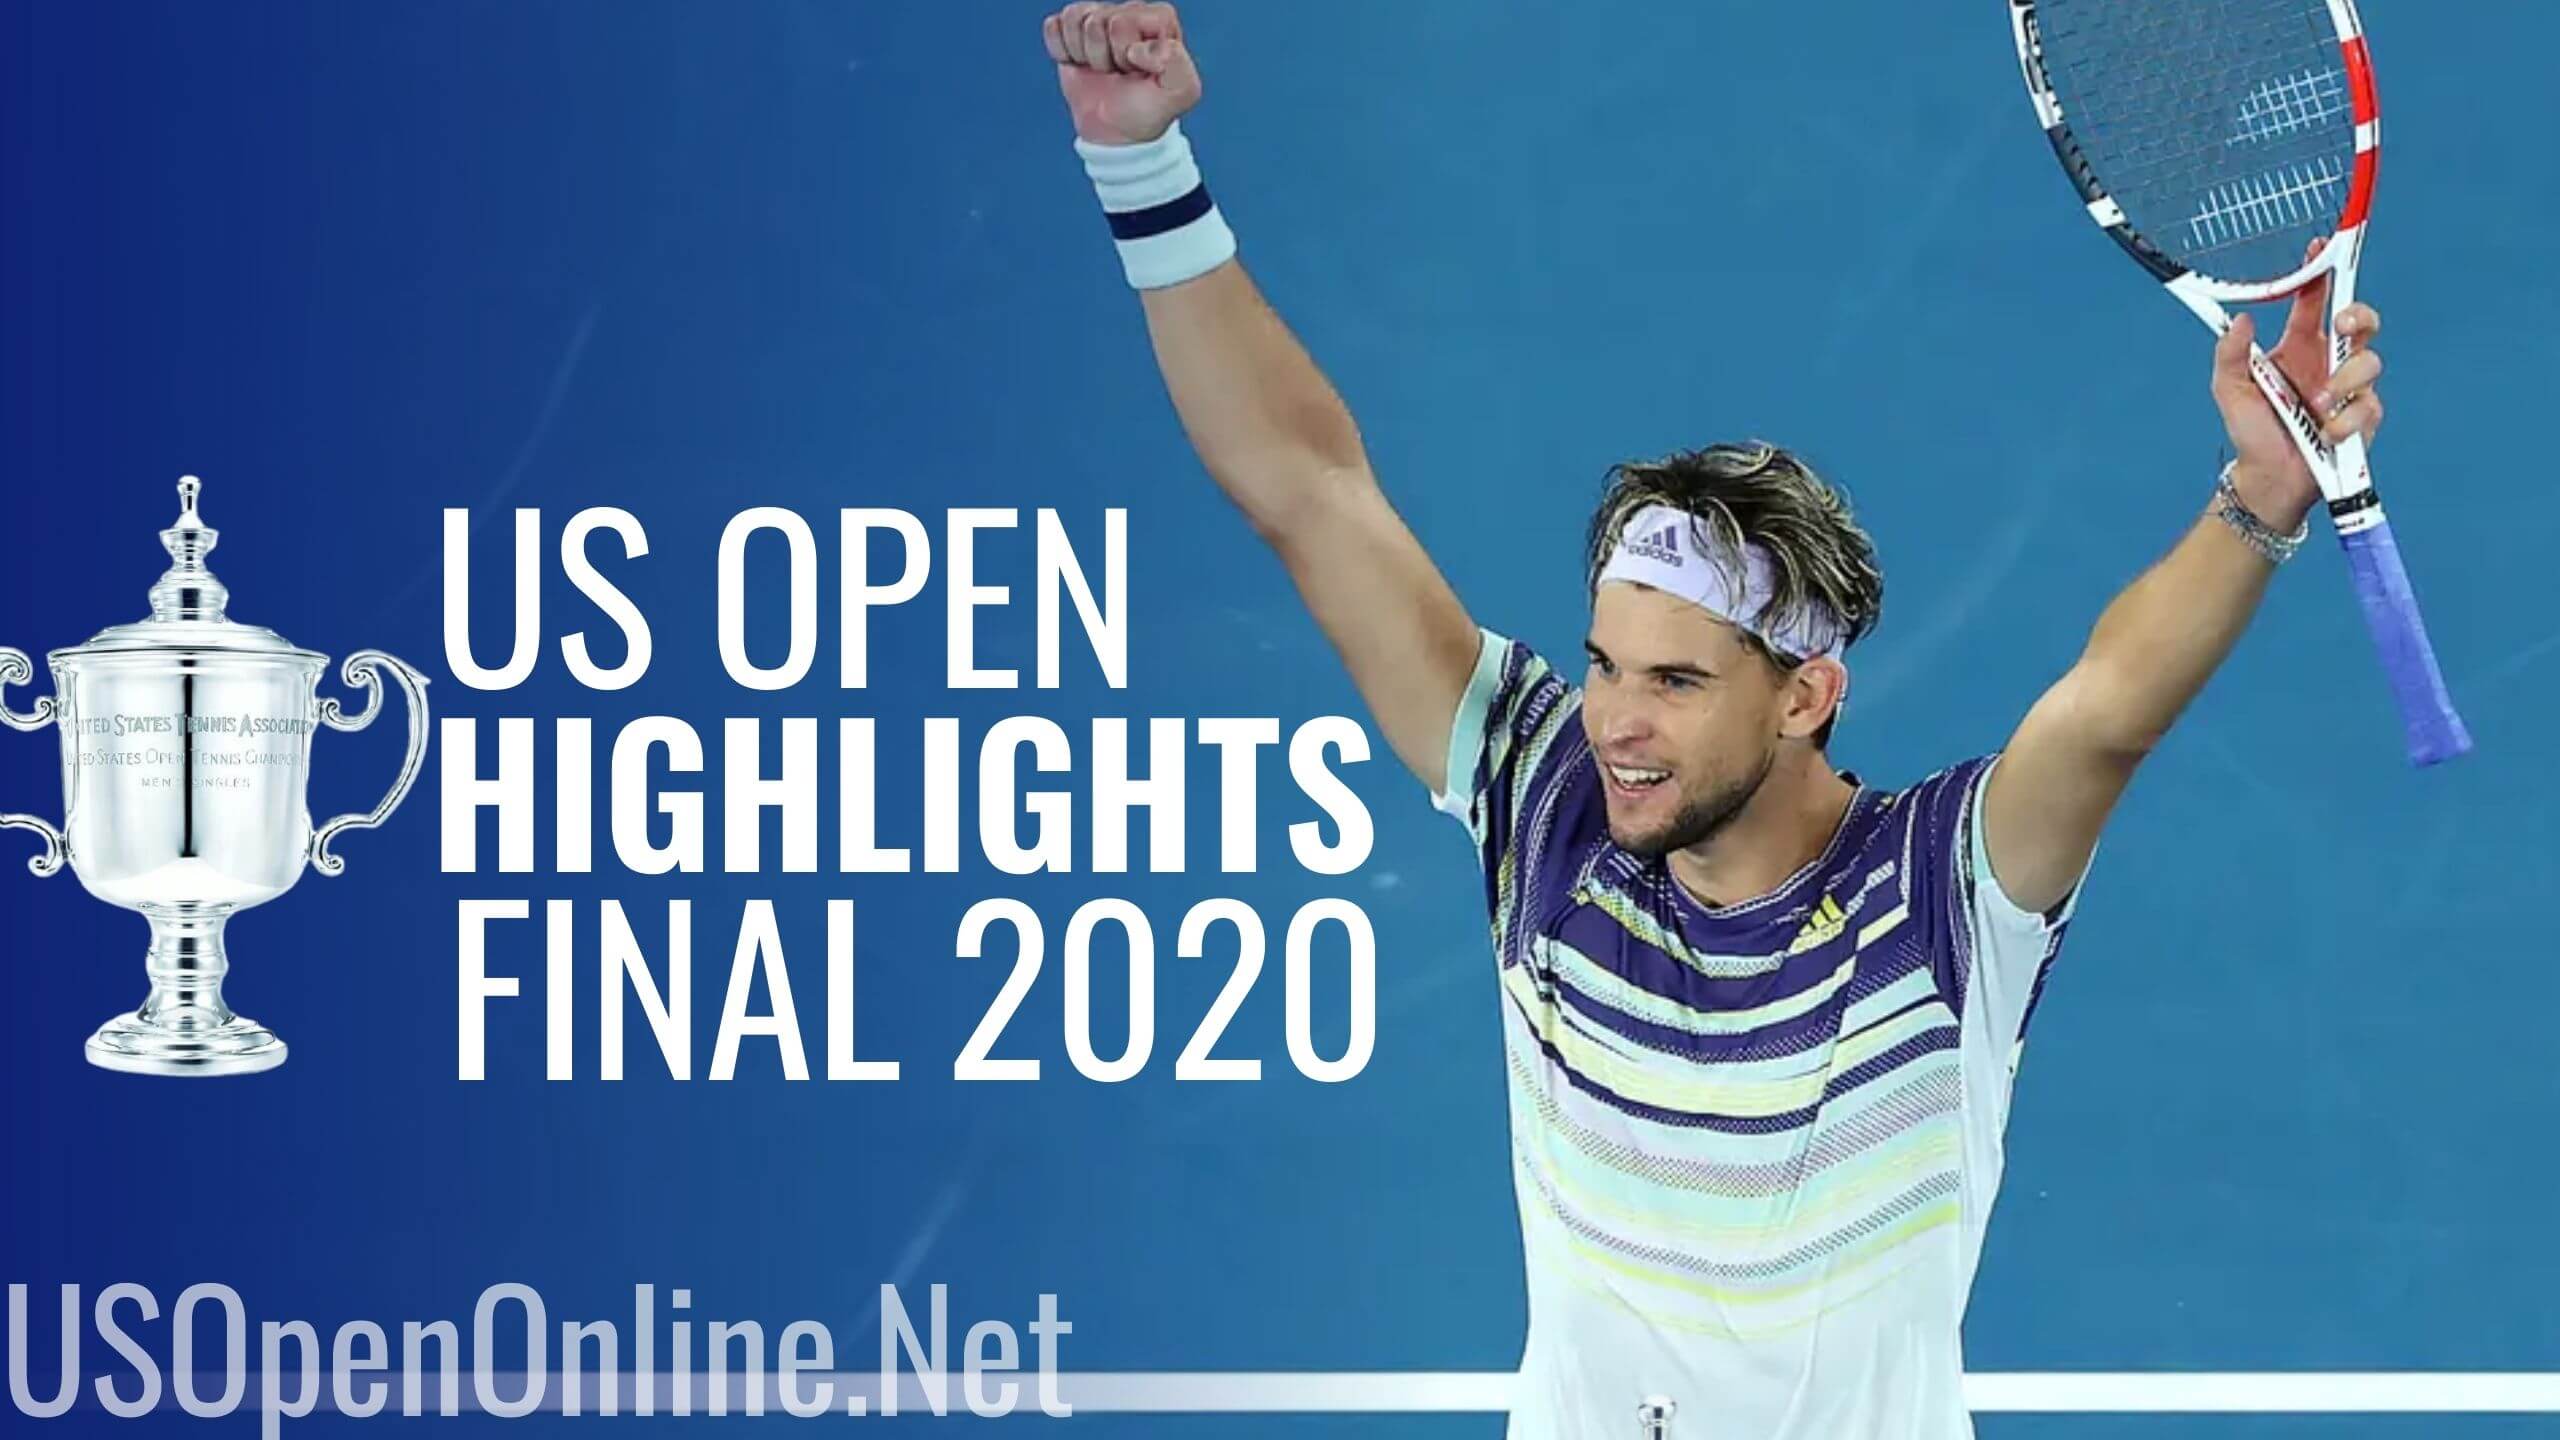 Zverev Vs Thiem Final Highlights US Open 2020